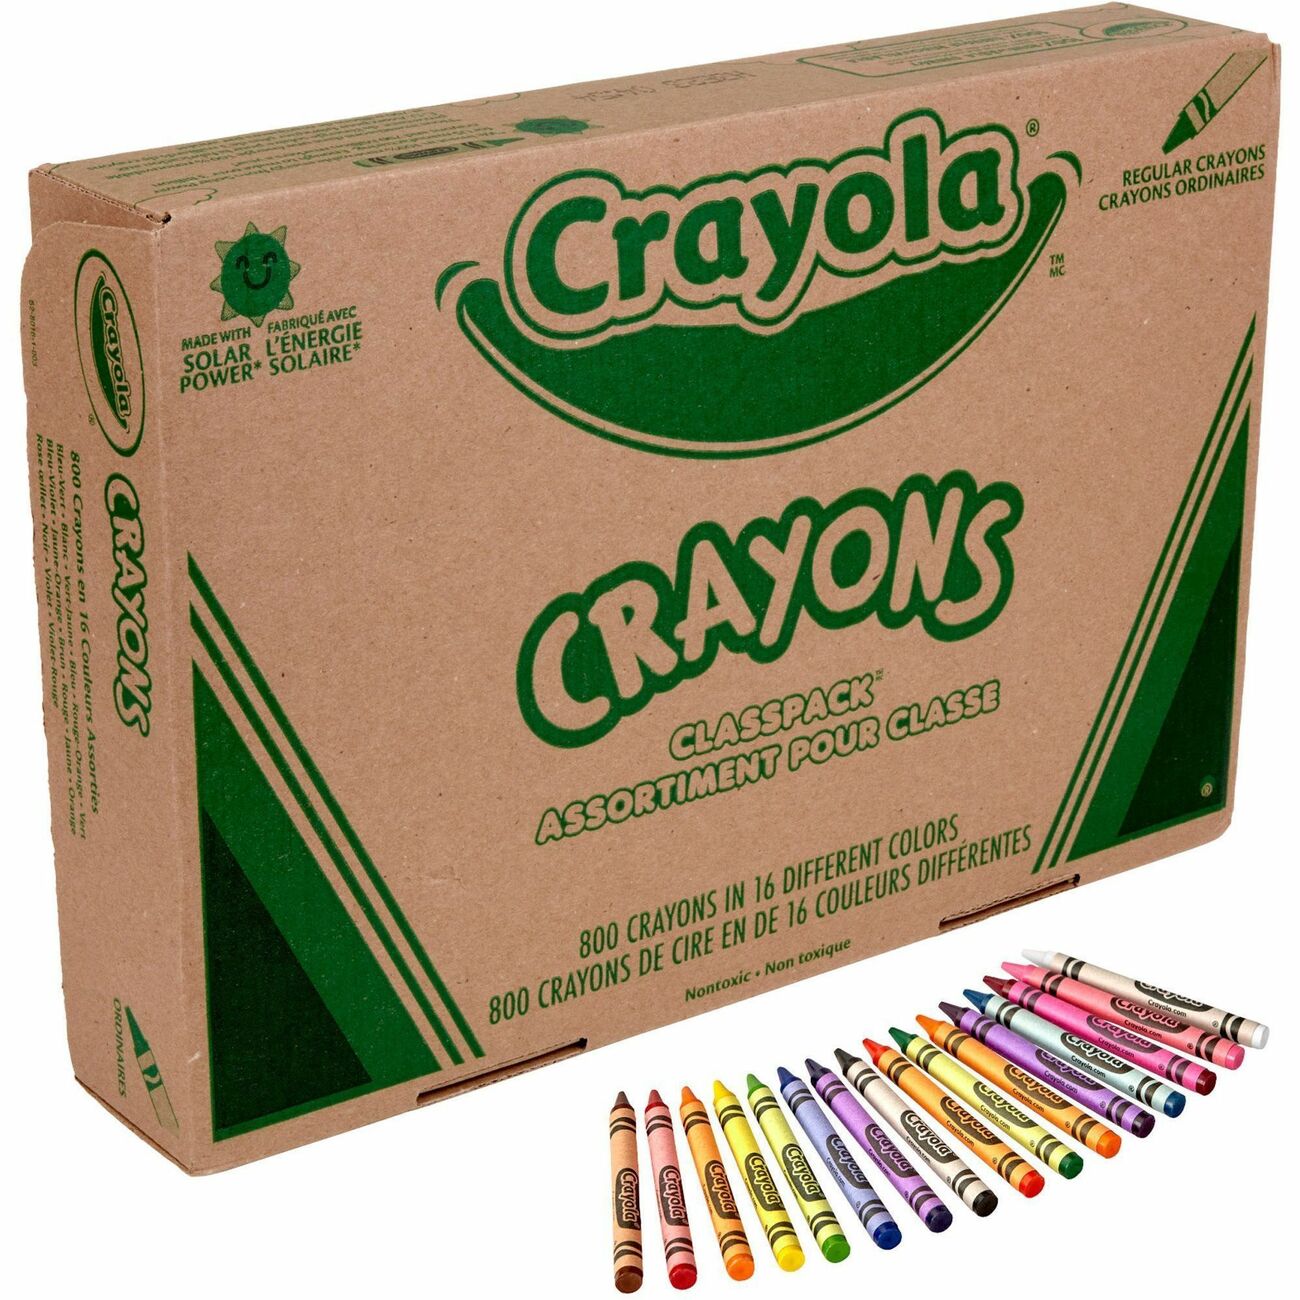 CYO588201 - Crayola 16-Color Marker Classpack - Broad Marker